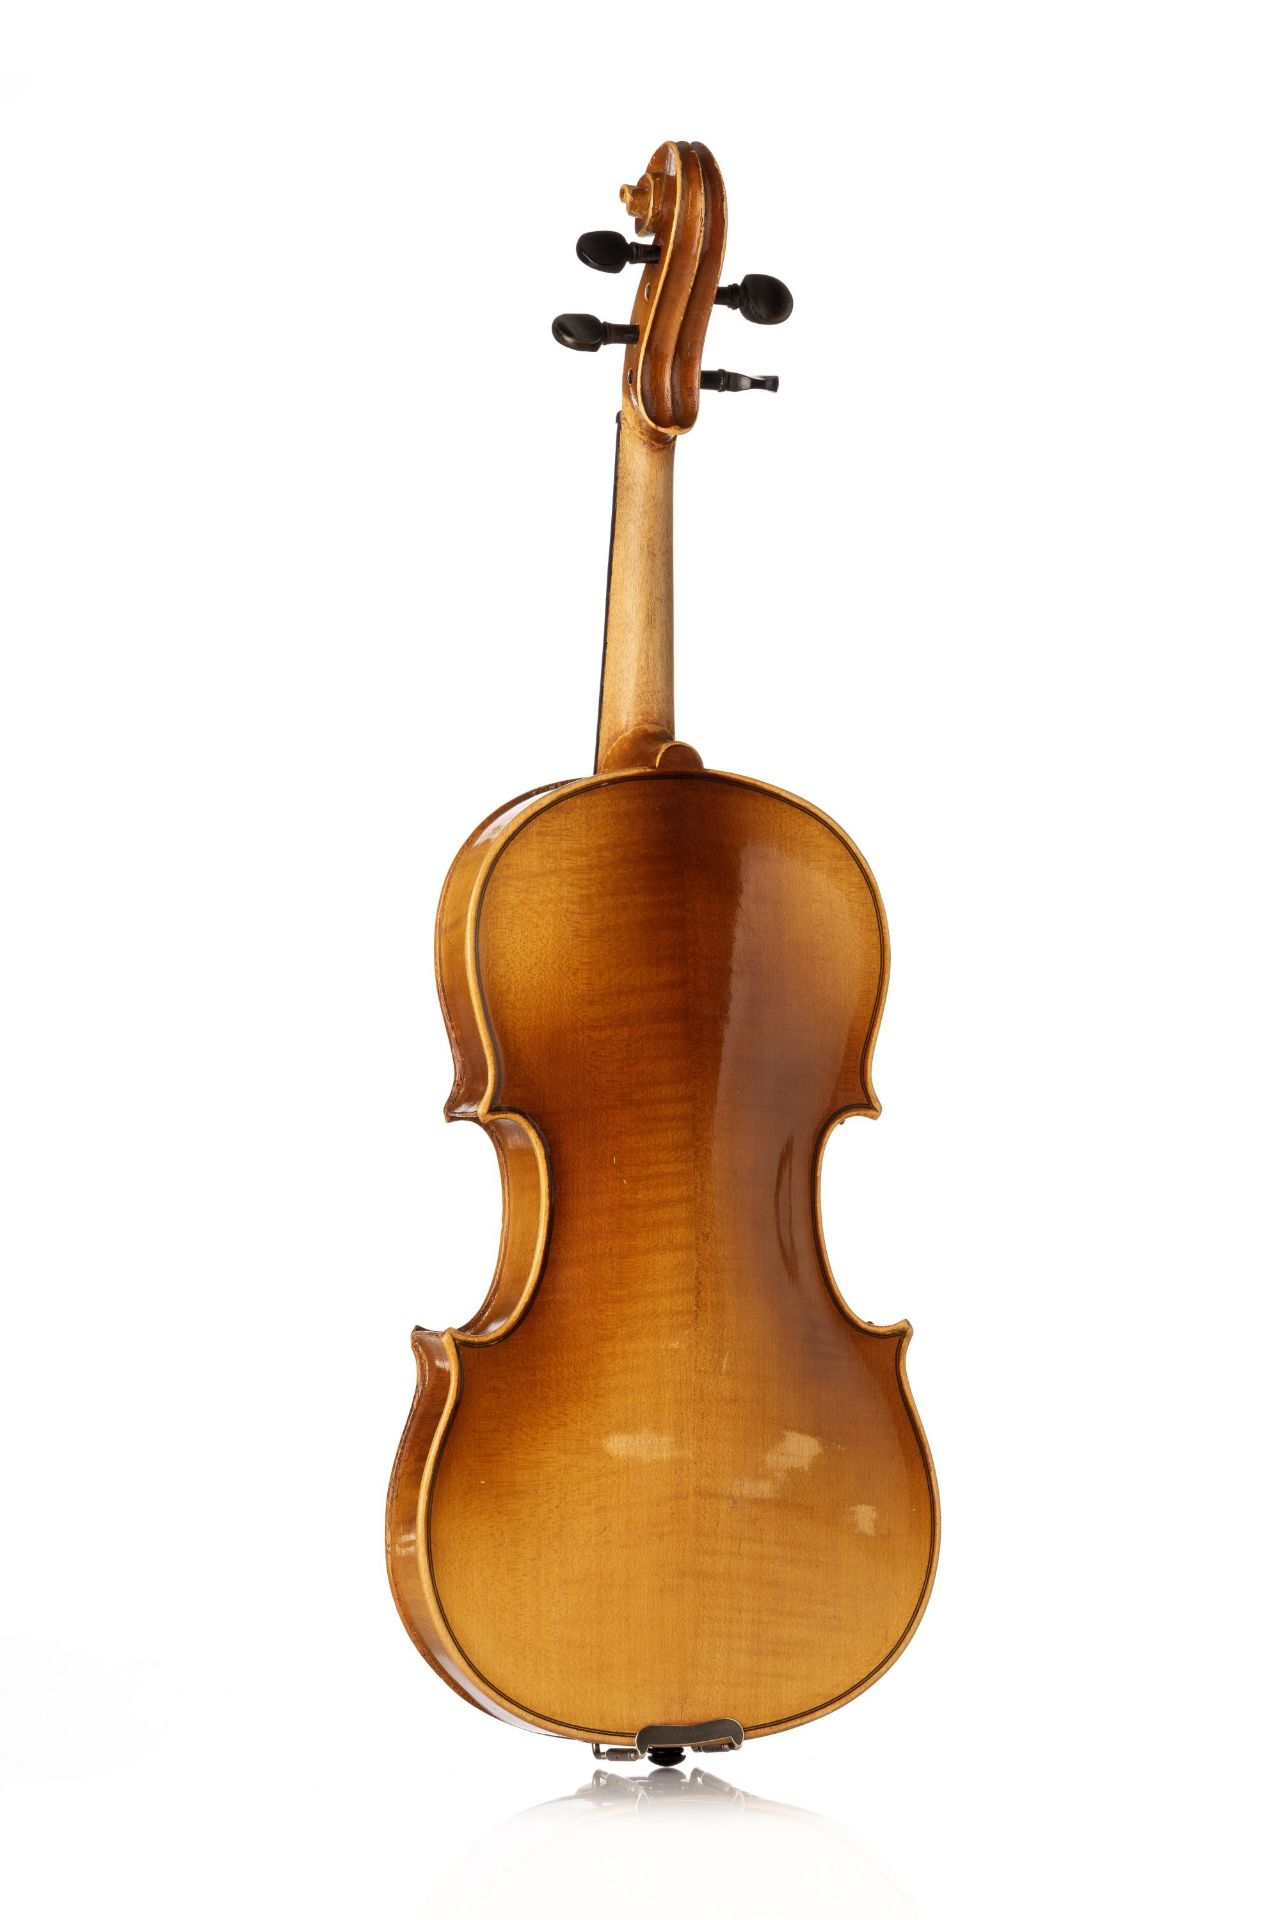 Geige / Geigenbogen. 20. Jh. - Bild 2 aus 5